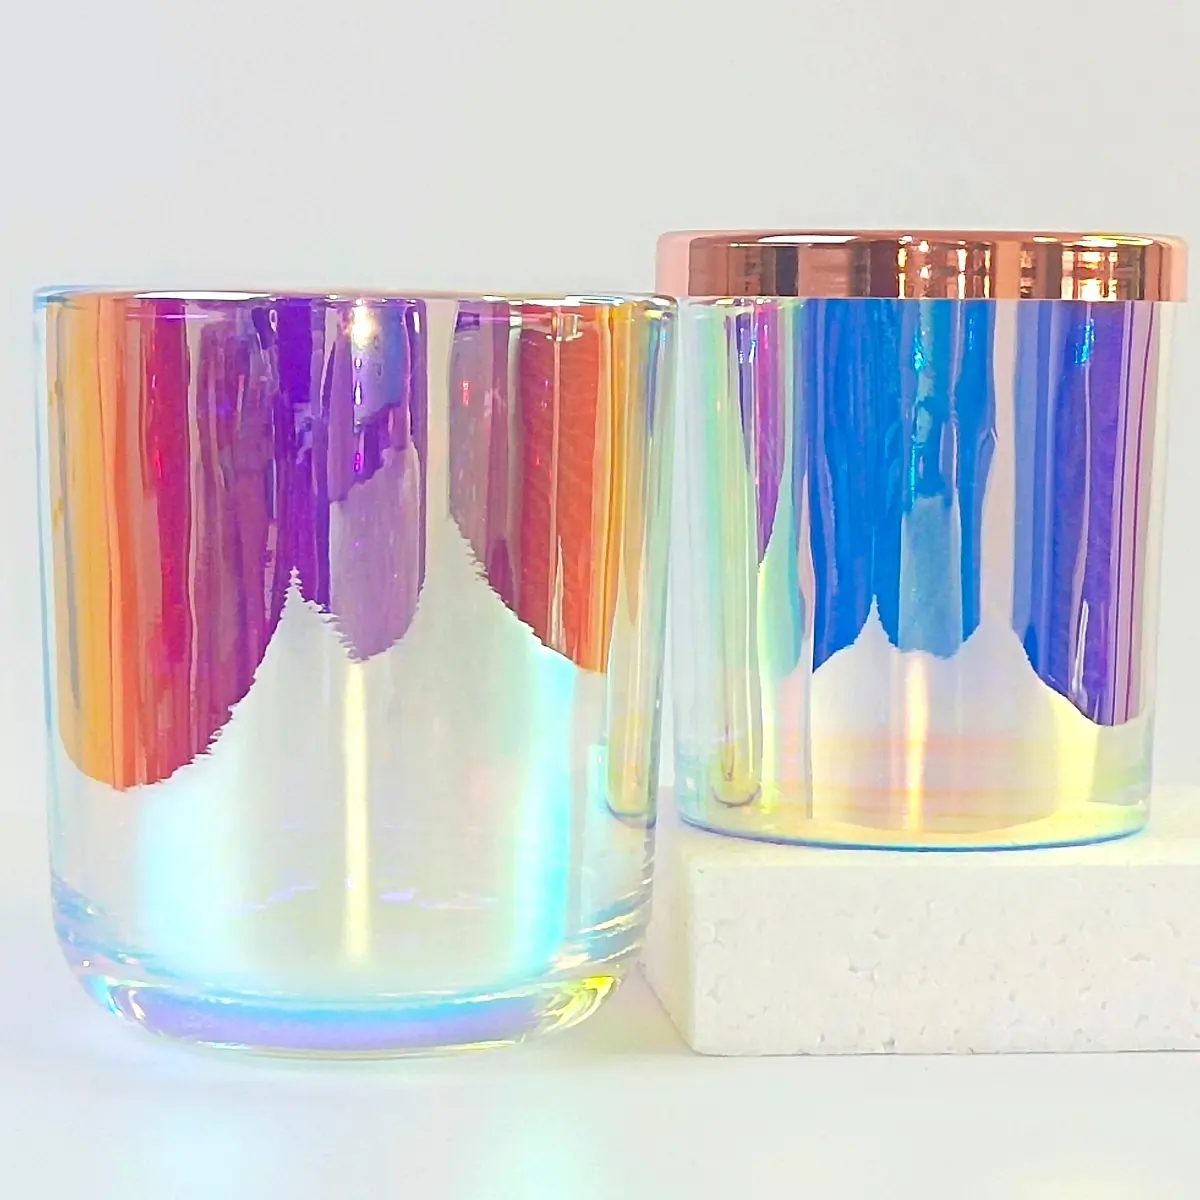 Tarro de vela de vidrio iridiscente con tapa, tarros de vela vacíos populares para hacer velas